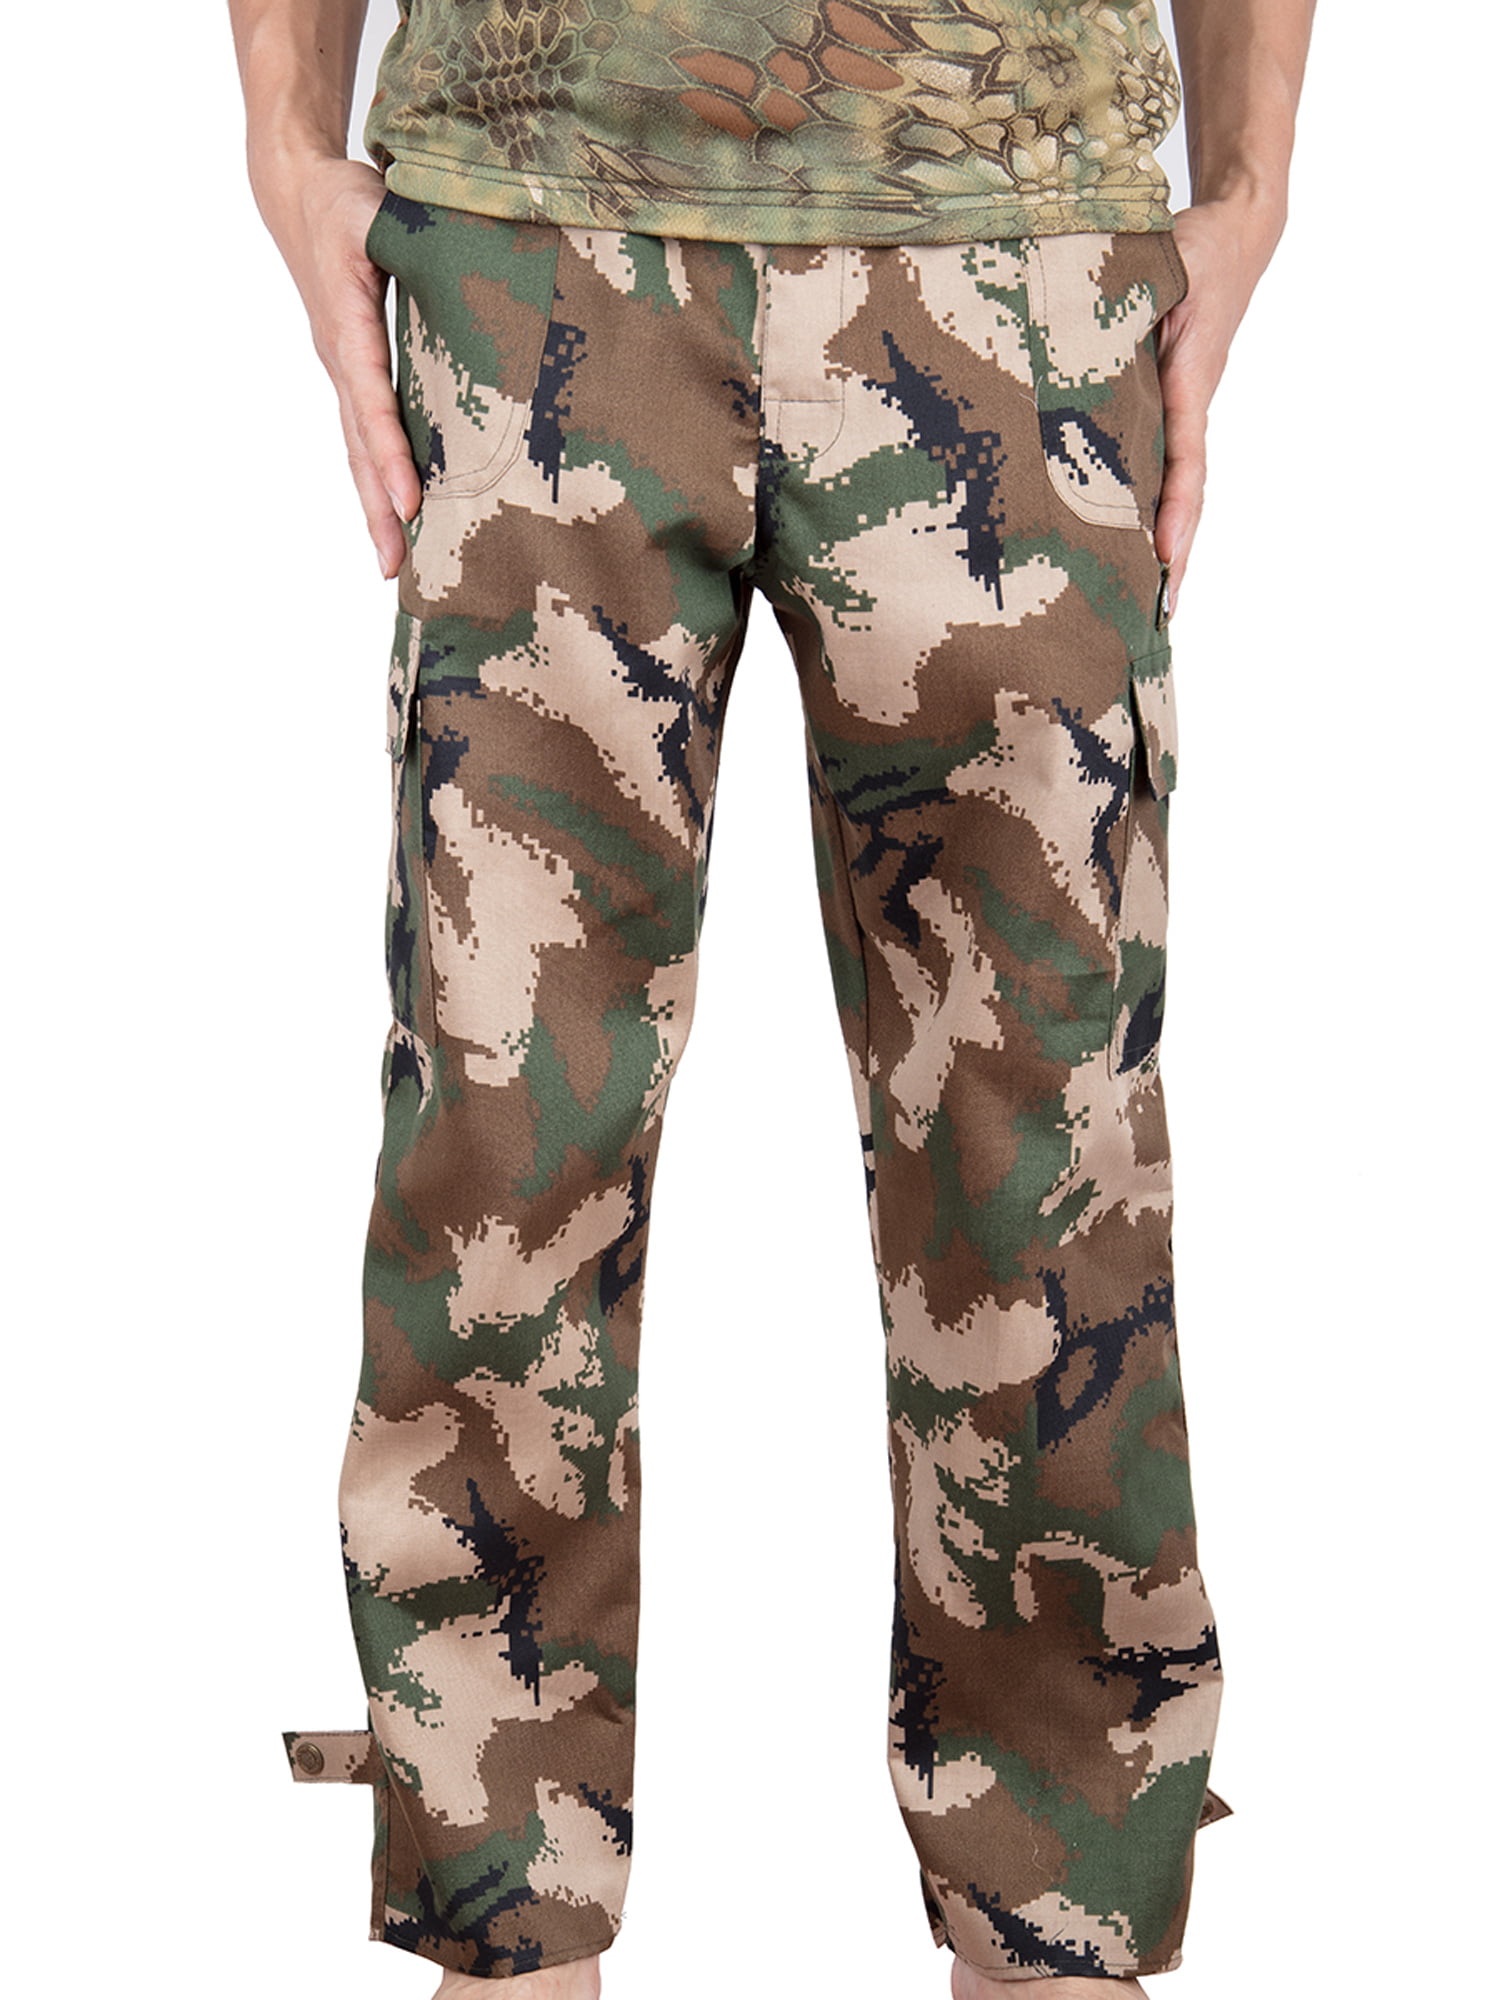 camouflage cargo pants walmart